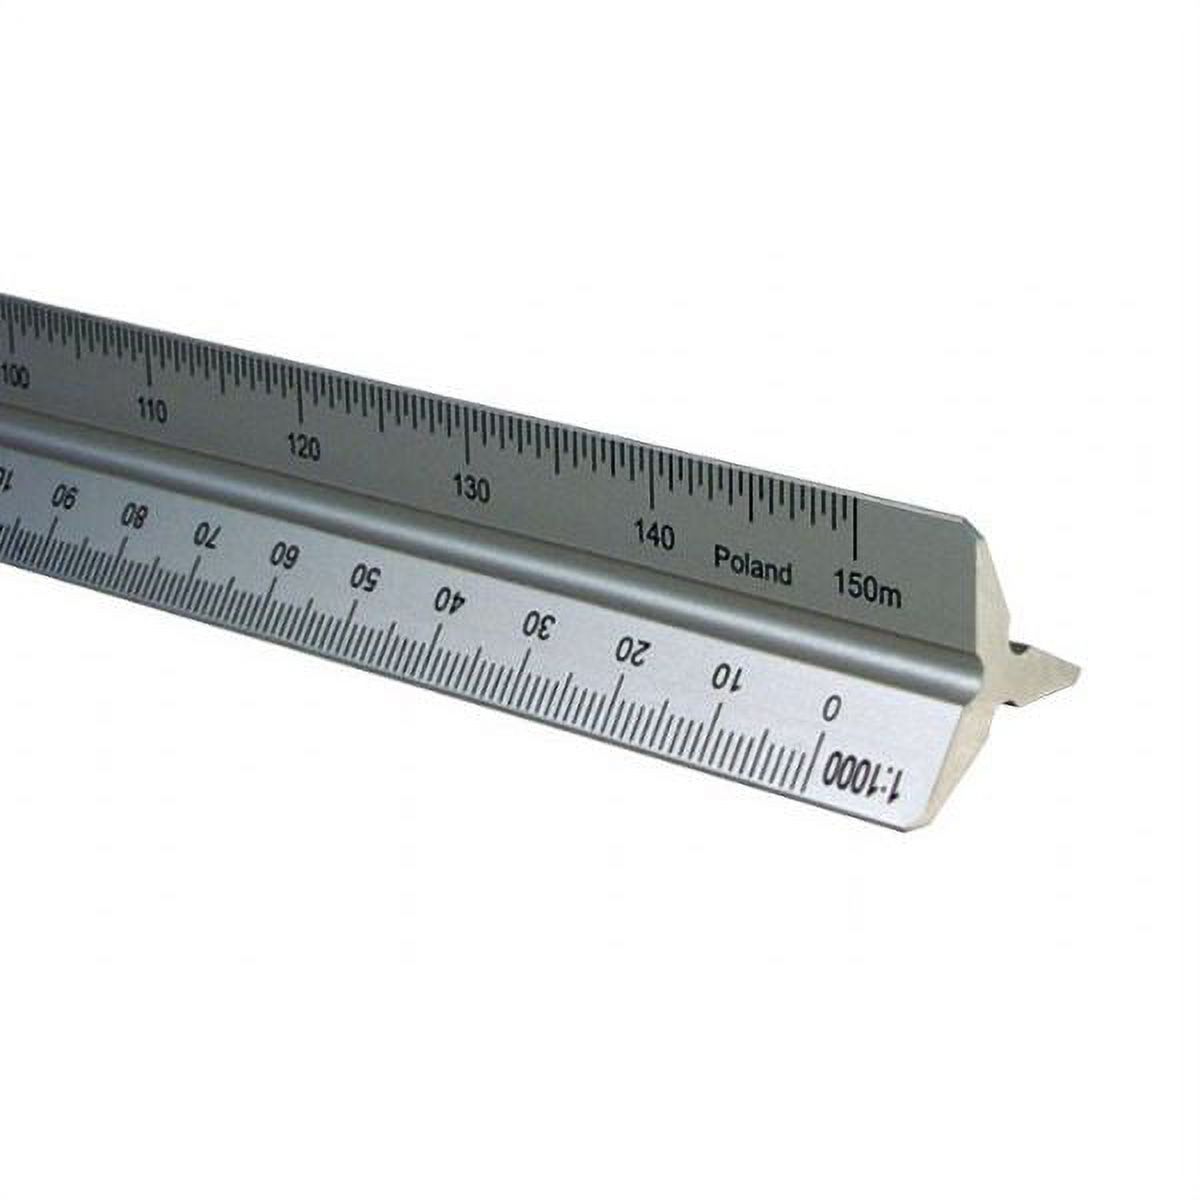 Alvin 30cm Aluminum Metric Triangular Scale - image 2 of 2